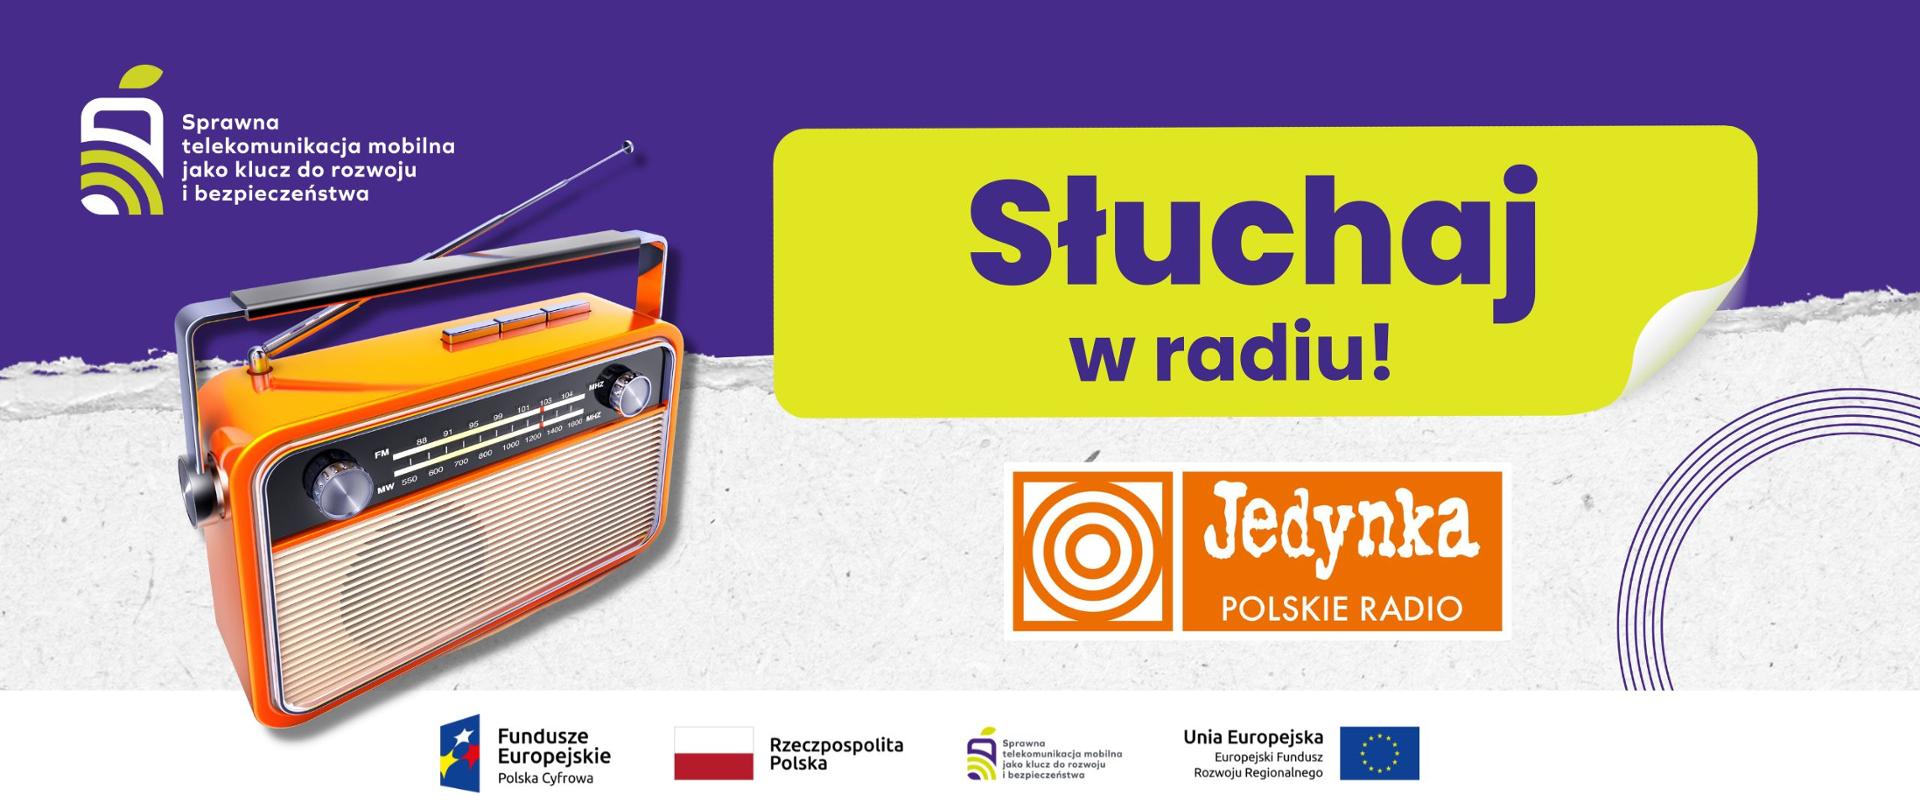 Grafika przedstawia napis Słuchaj w radiu! oraz logotyp Jedynka Polskie Radio.